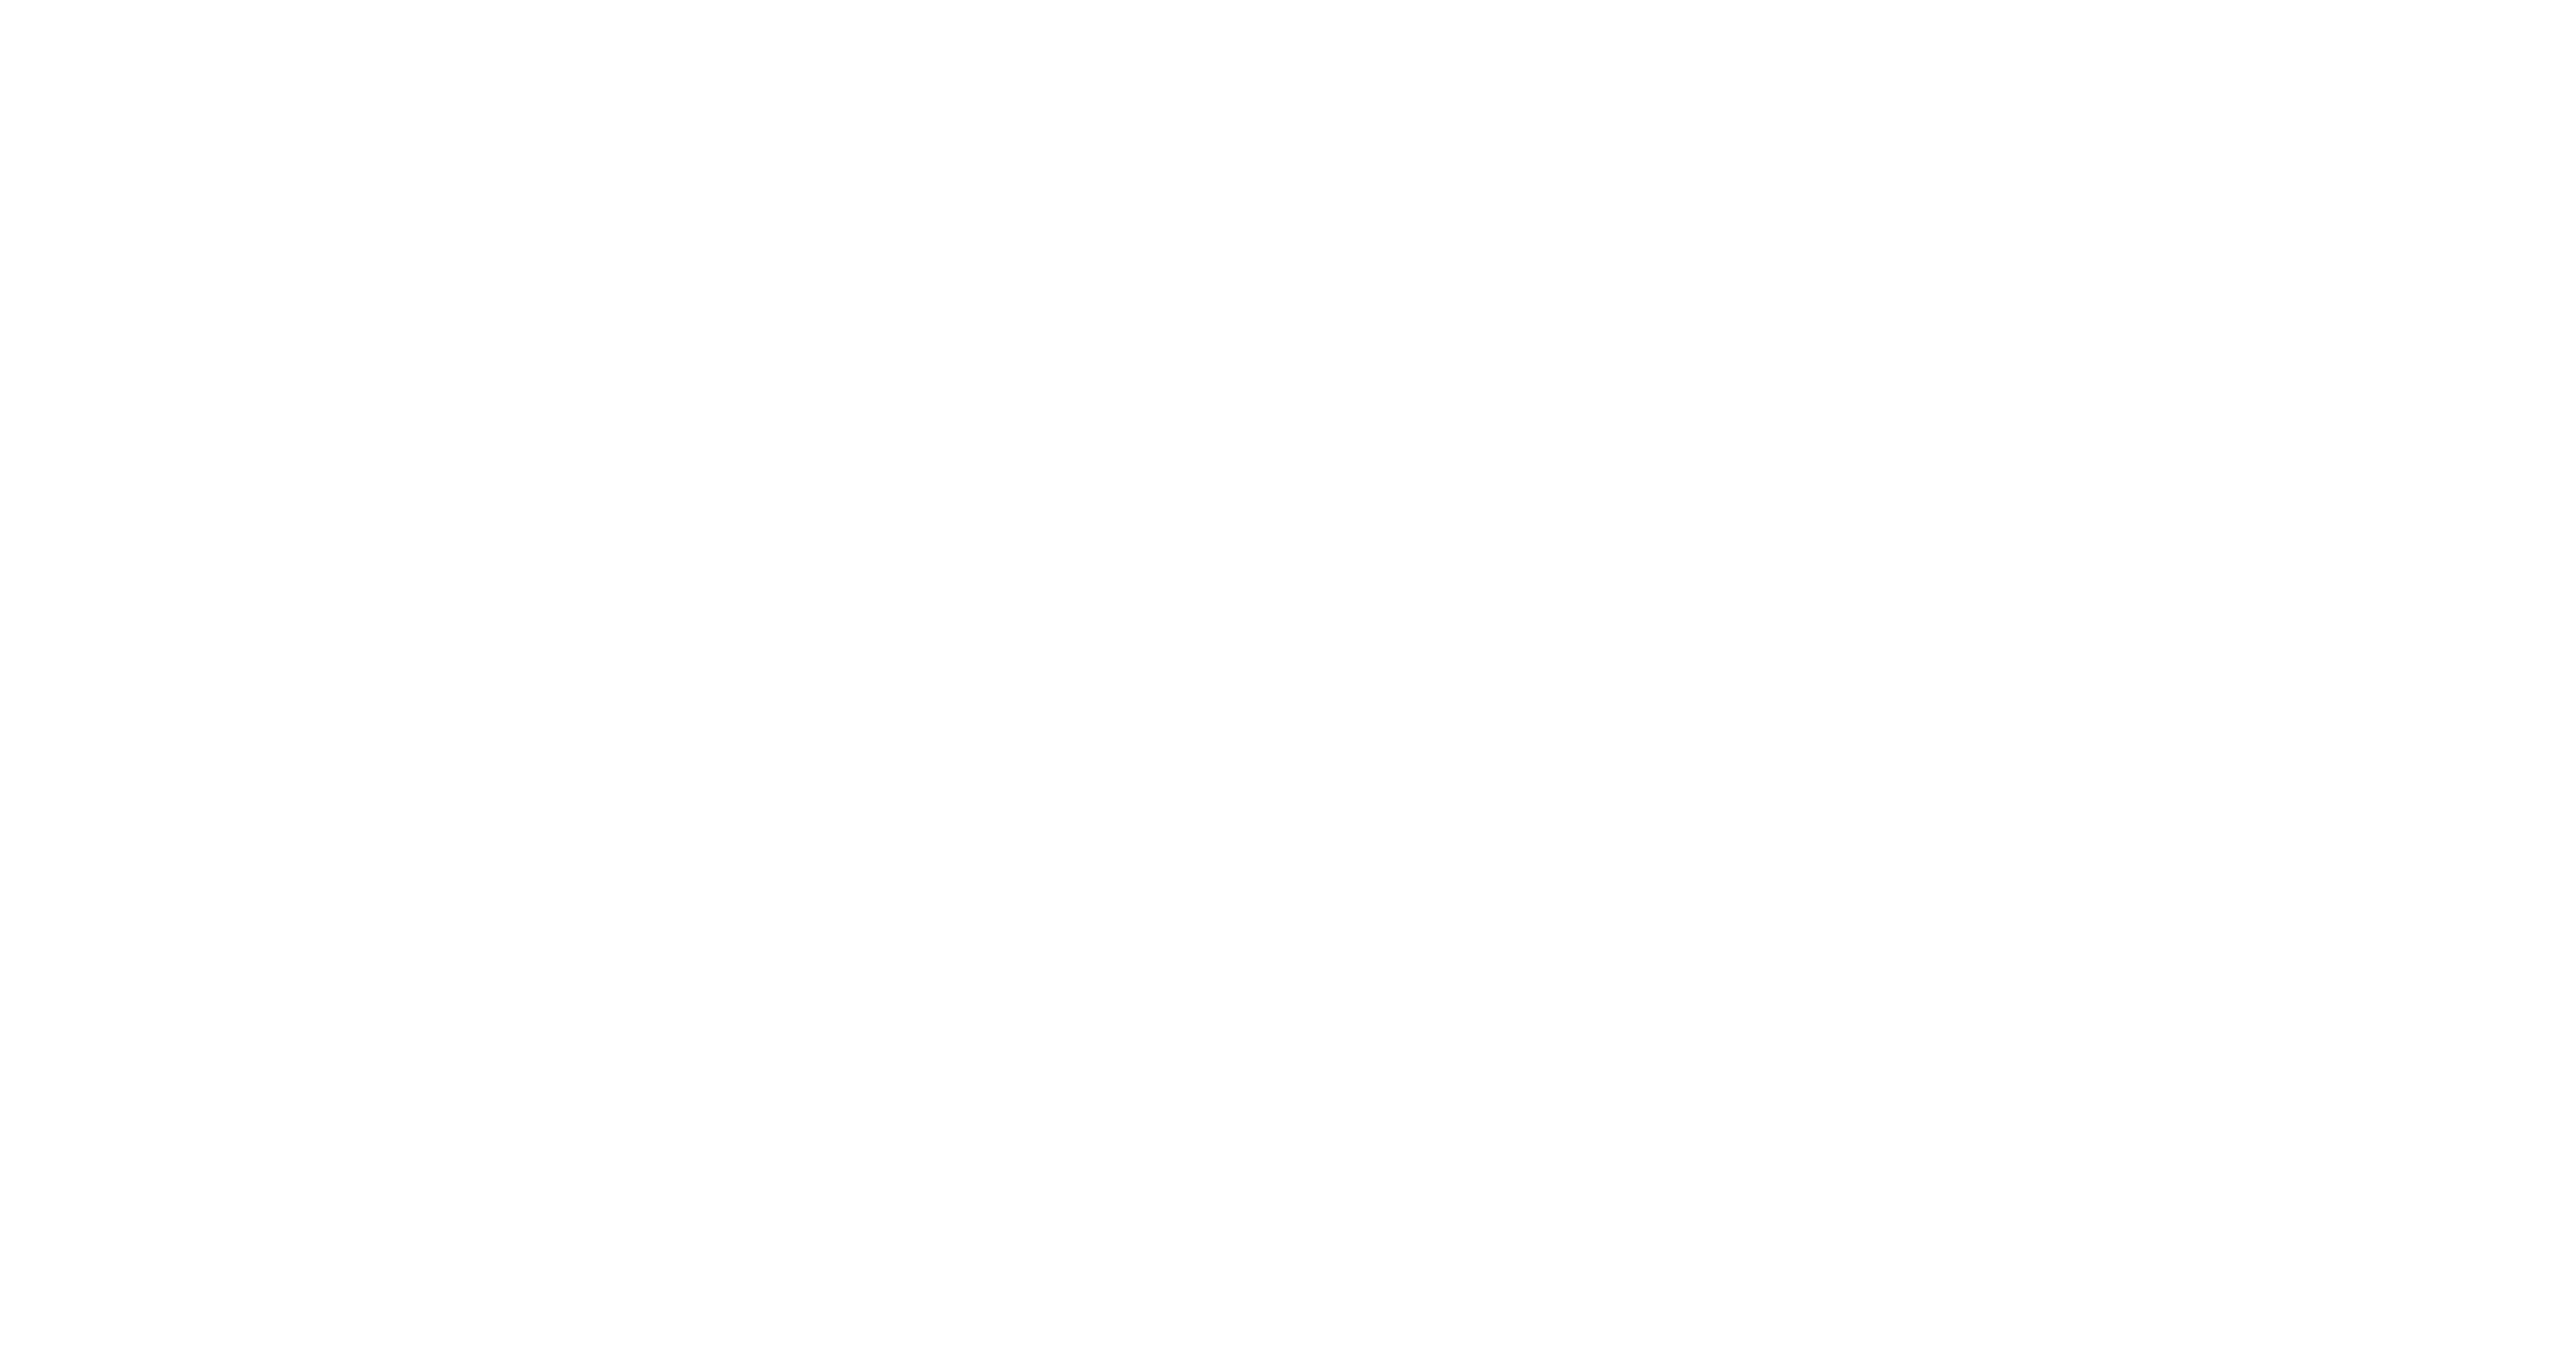 iFood logo